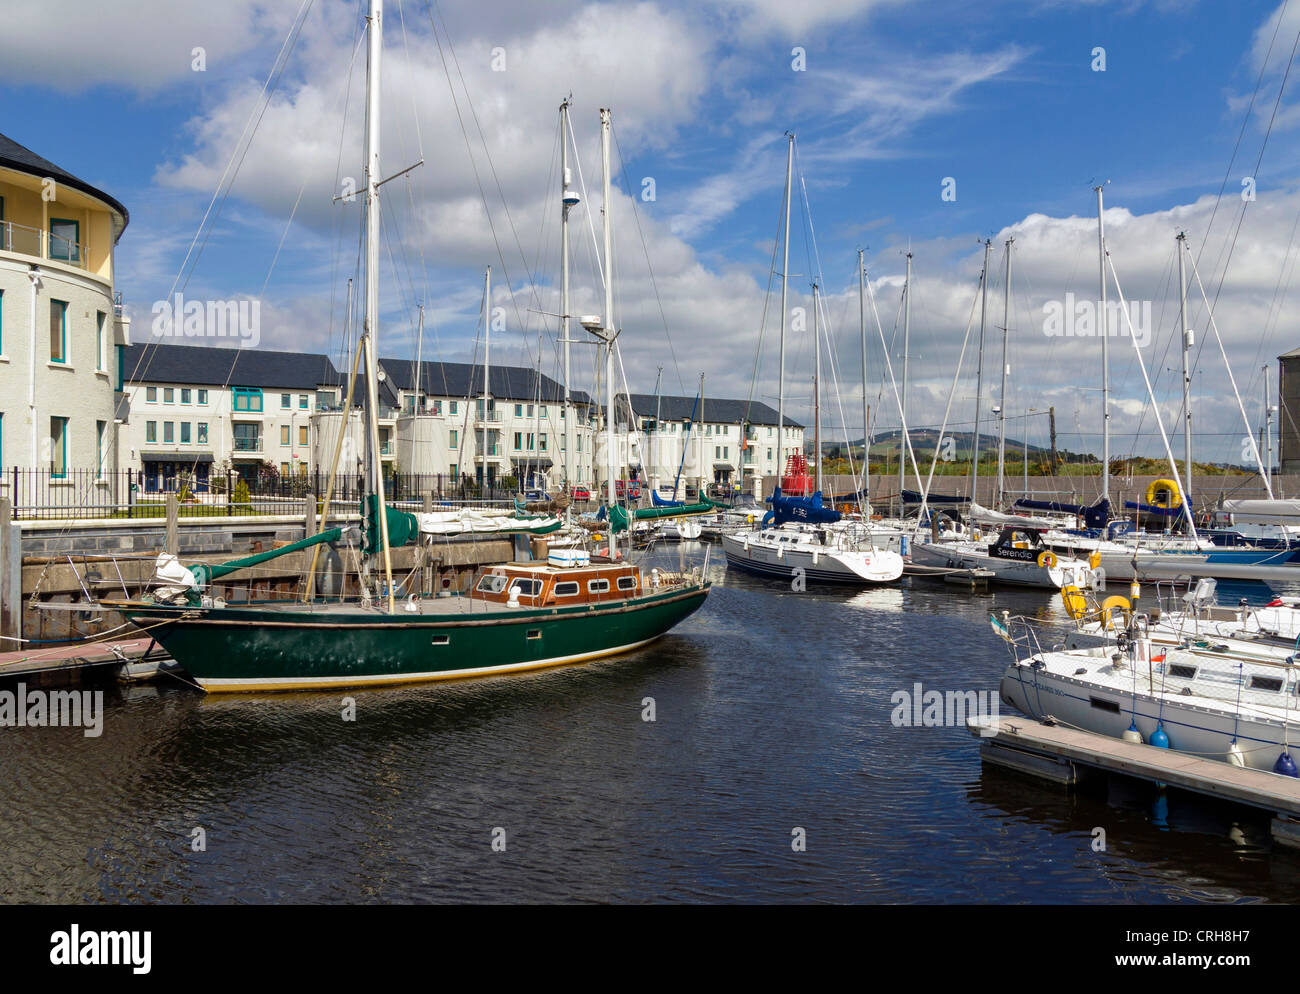 Marina at Arklow, County Wicklow, Ireland Stock Photo